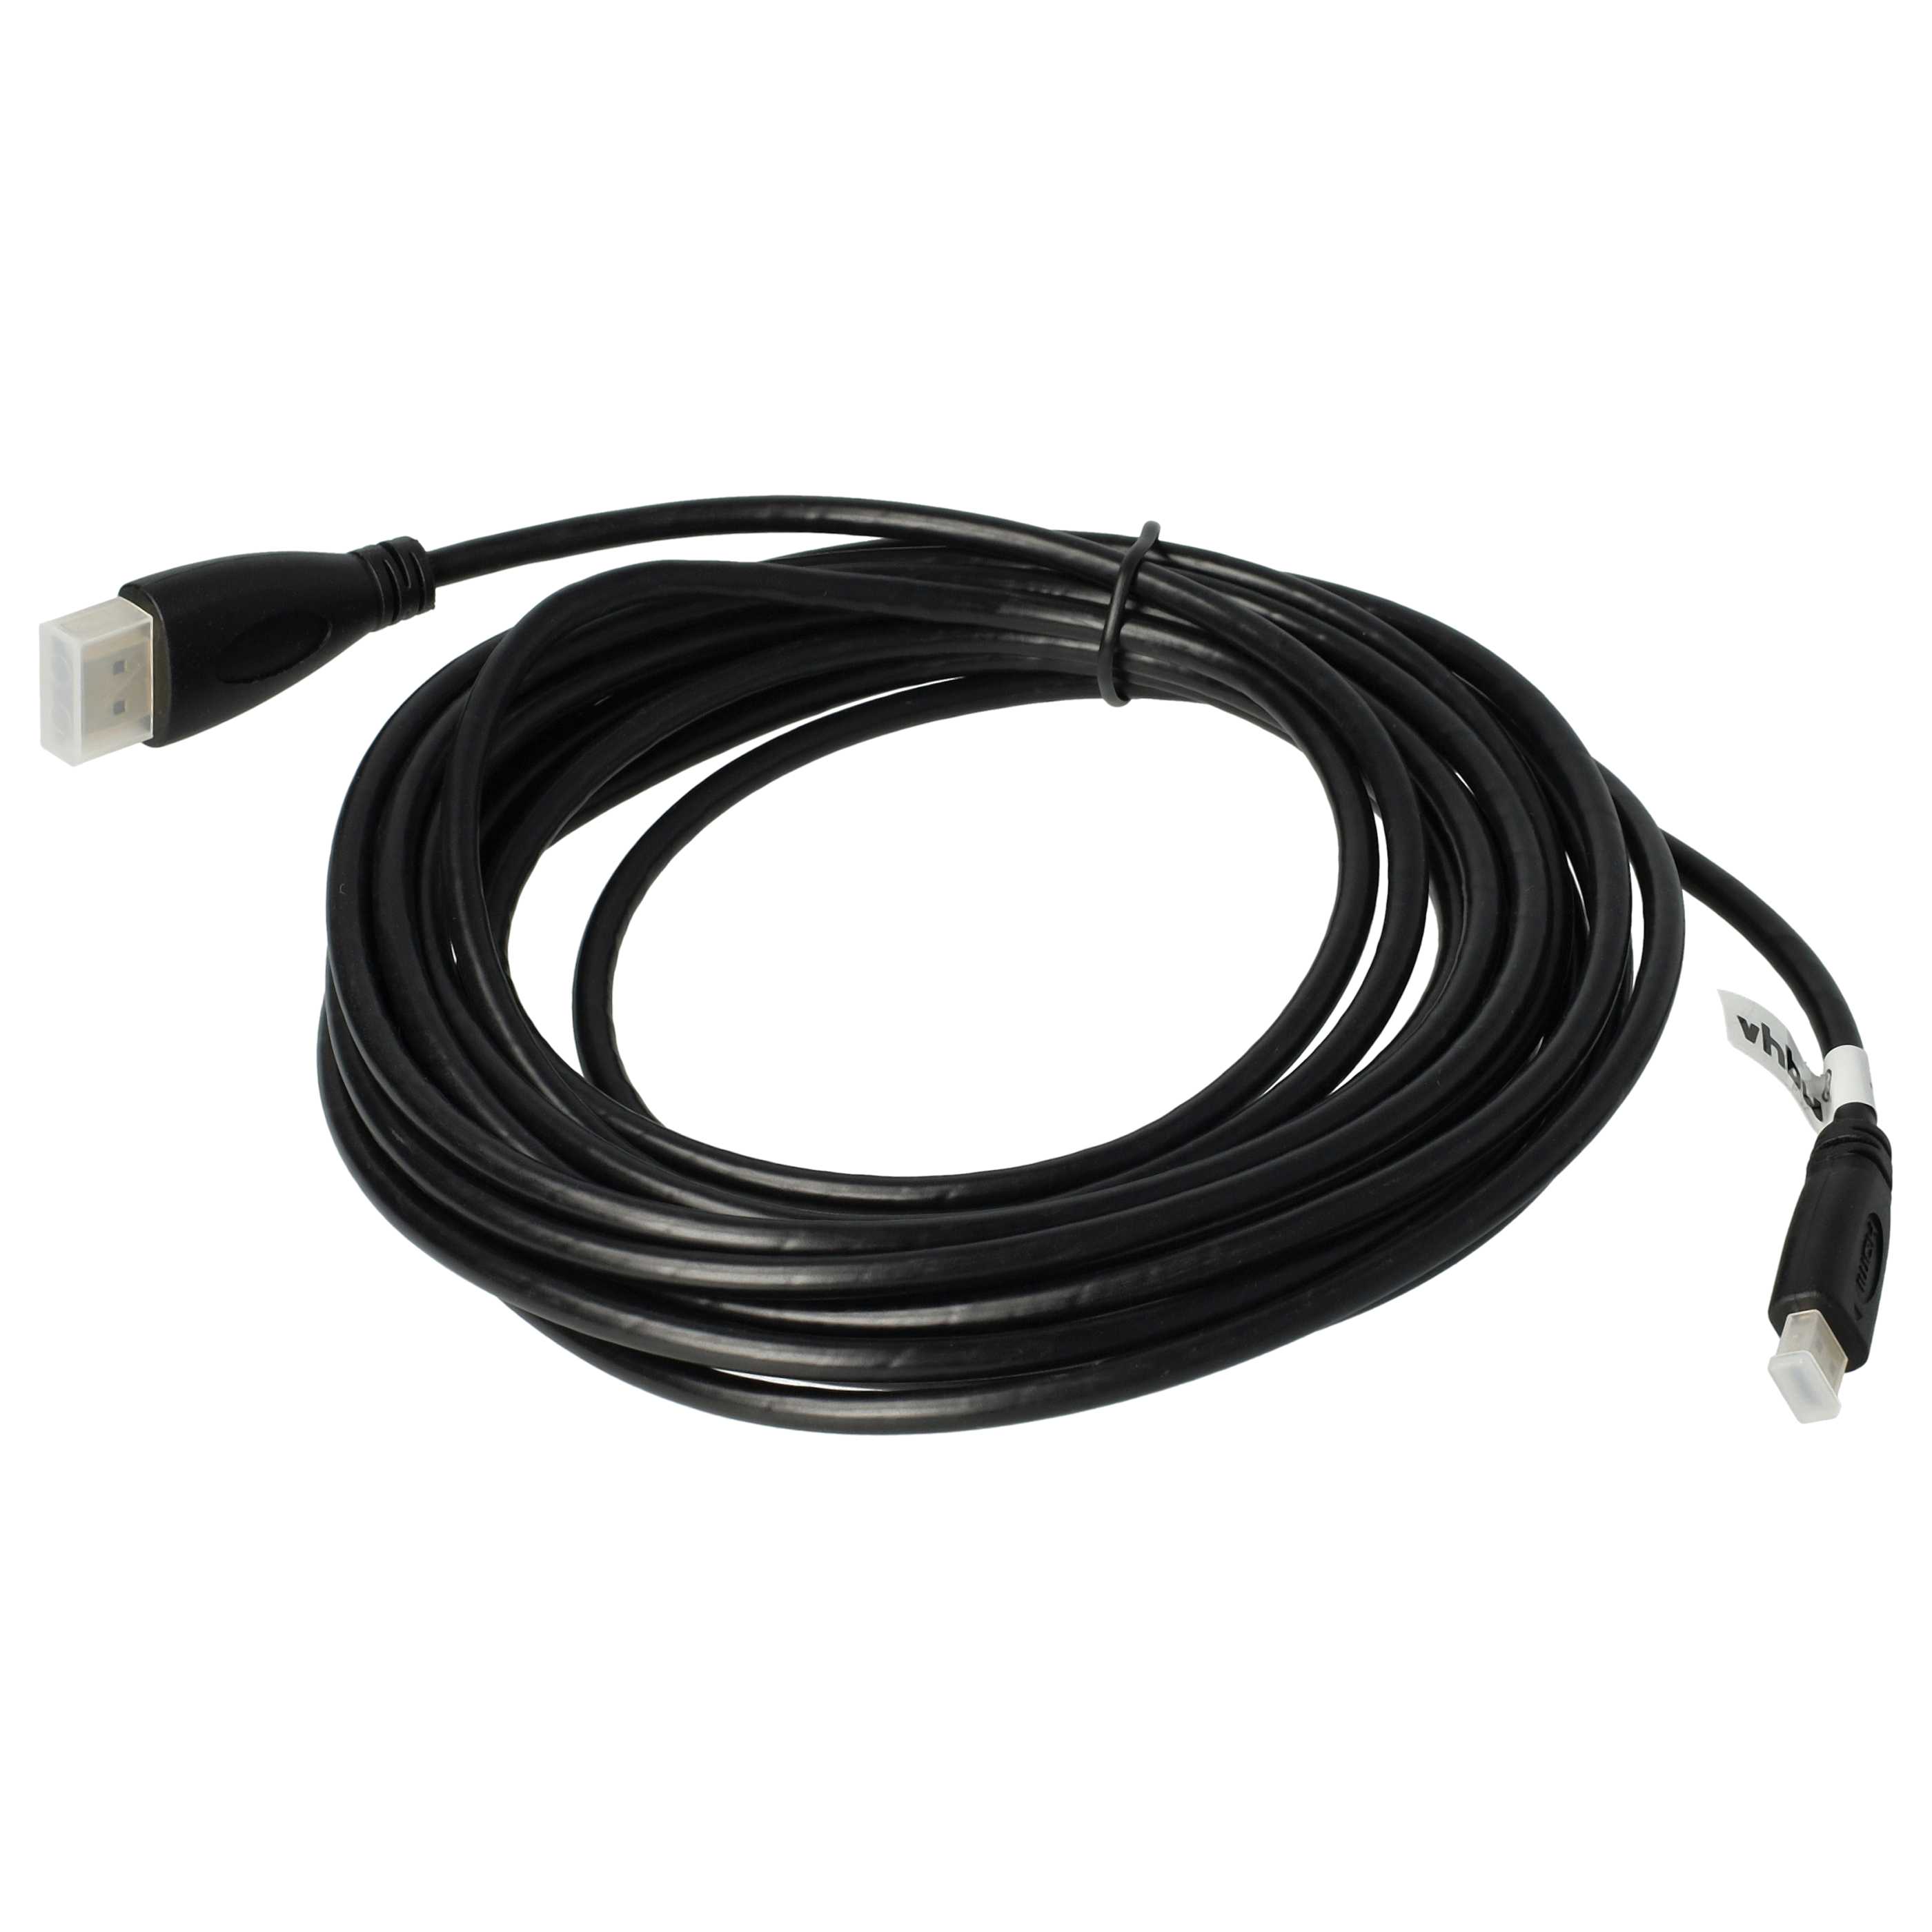 HDMI-Kabel, Micro-HDMI auf HDMI 1.4 5m für Tablet, Smartphone, Kamera